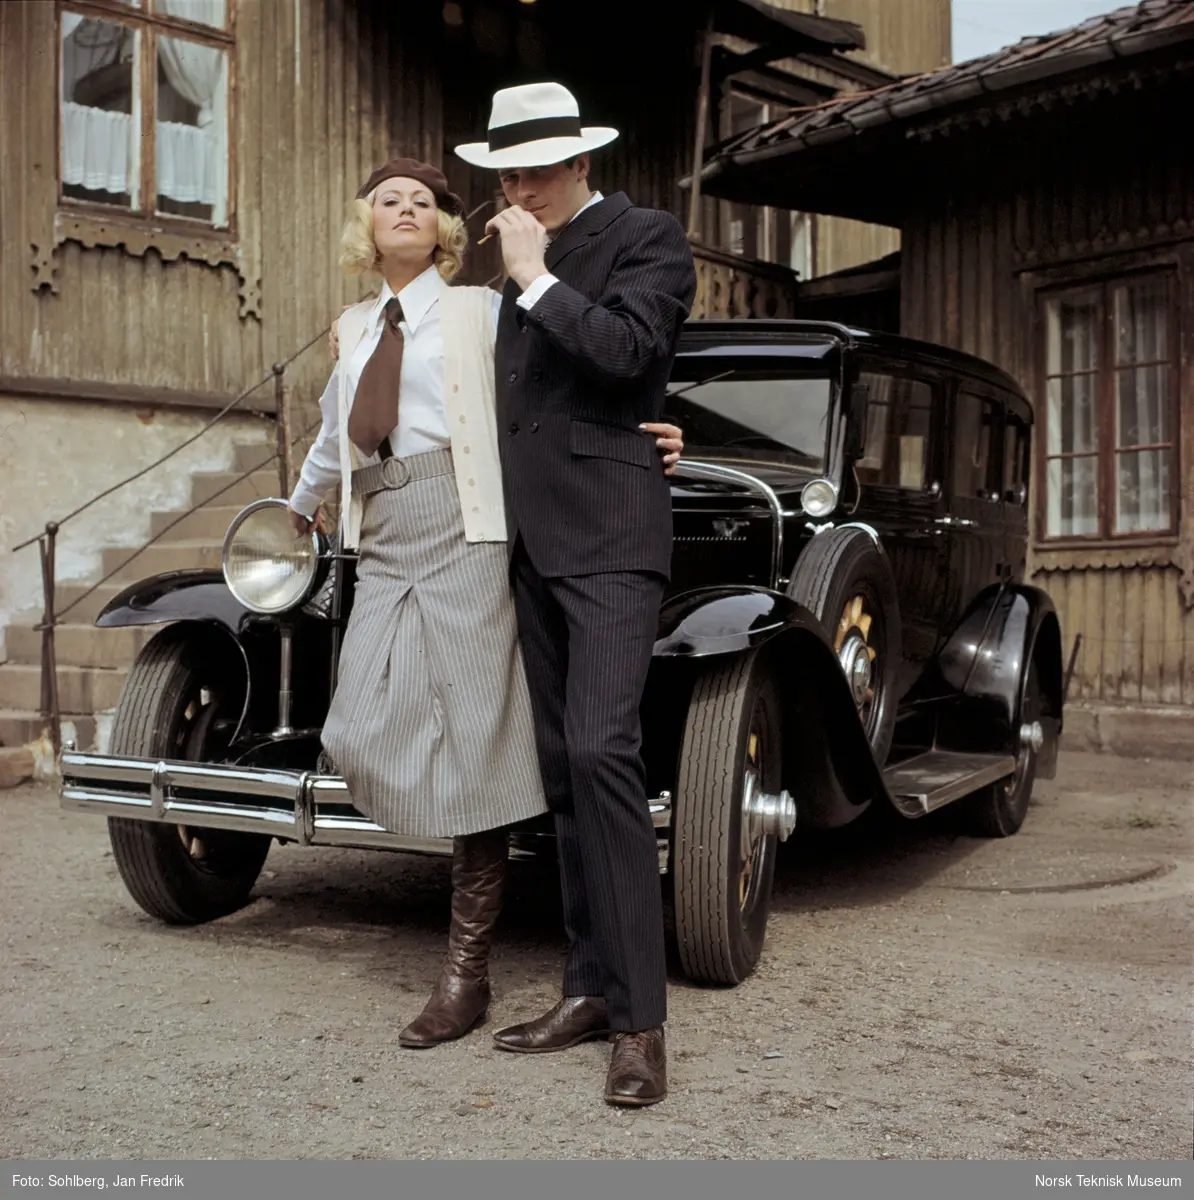 En kvinnelig og en mannlig modell viser høstmote. Fra en serie fotografier publisert i Det Nye 26.6.1968 til motereportasjen "Bonnie & Clyde".